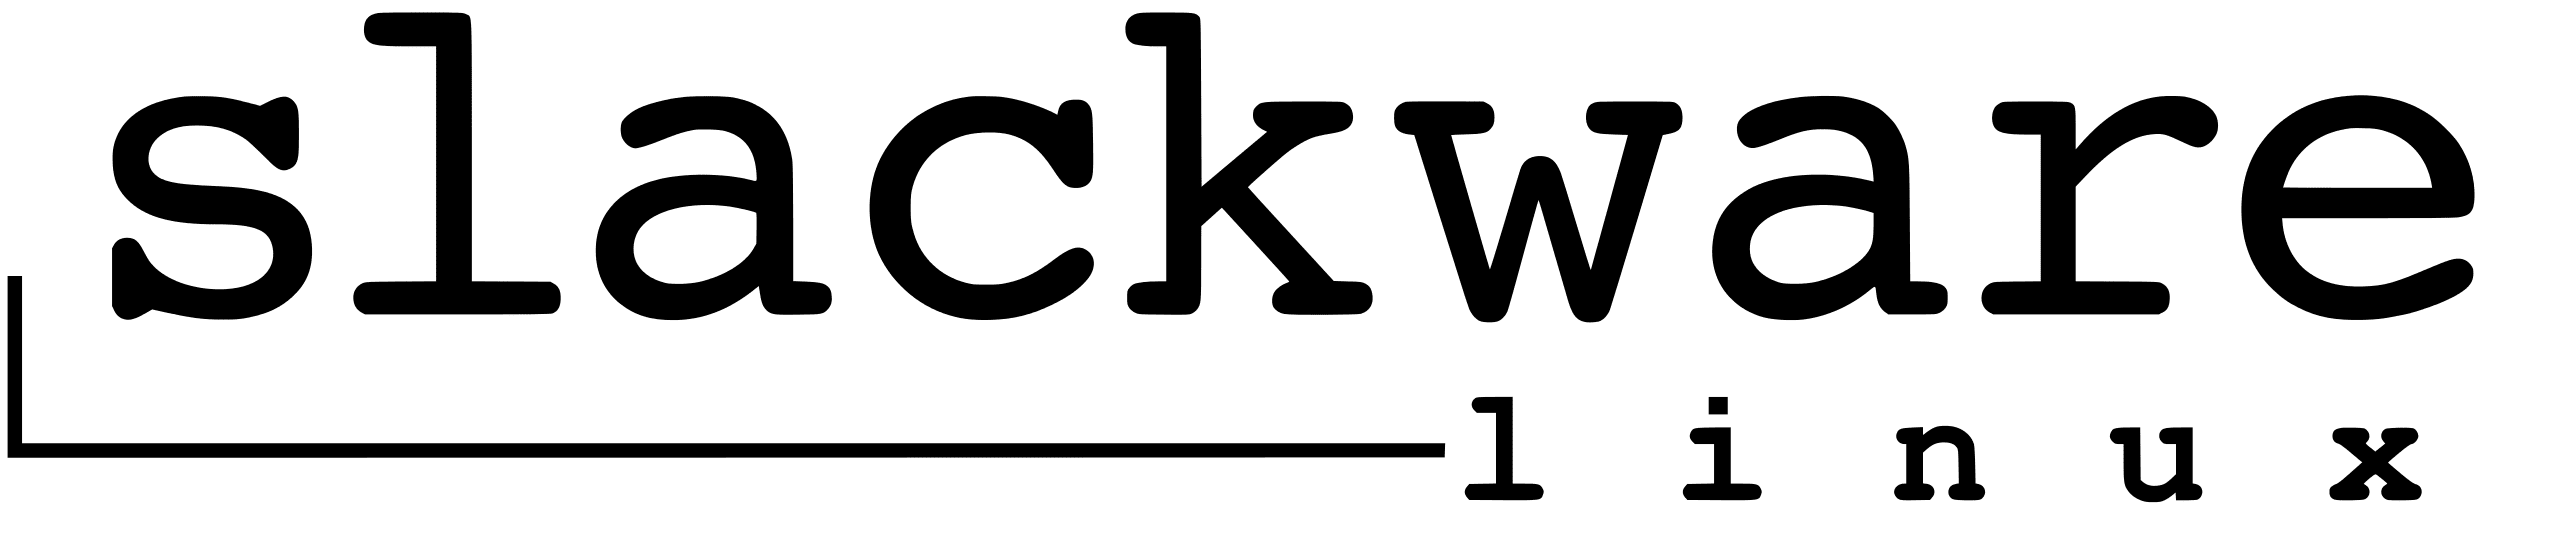 Slackware linux logo